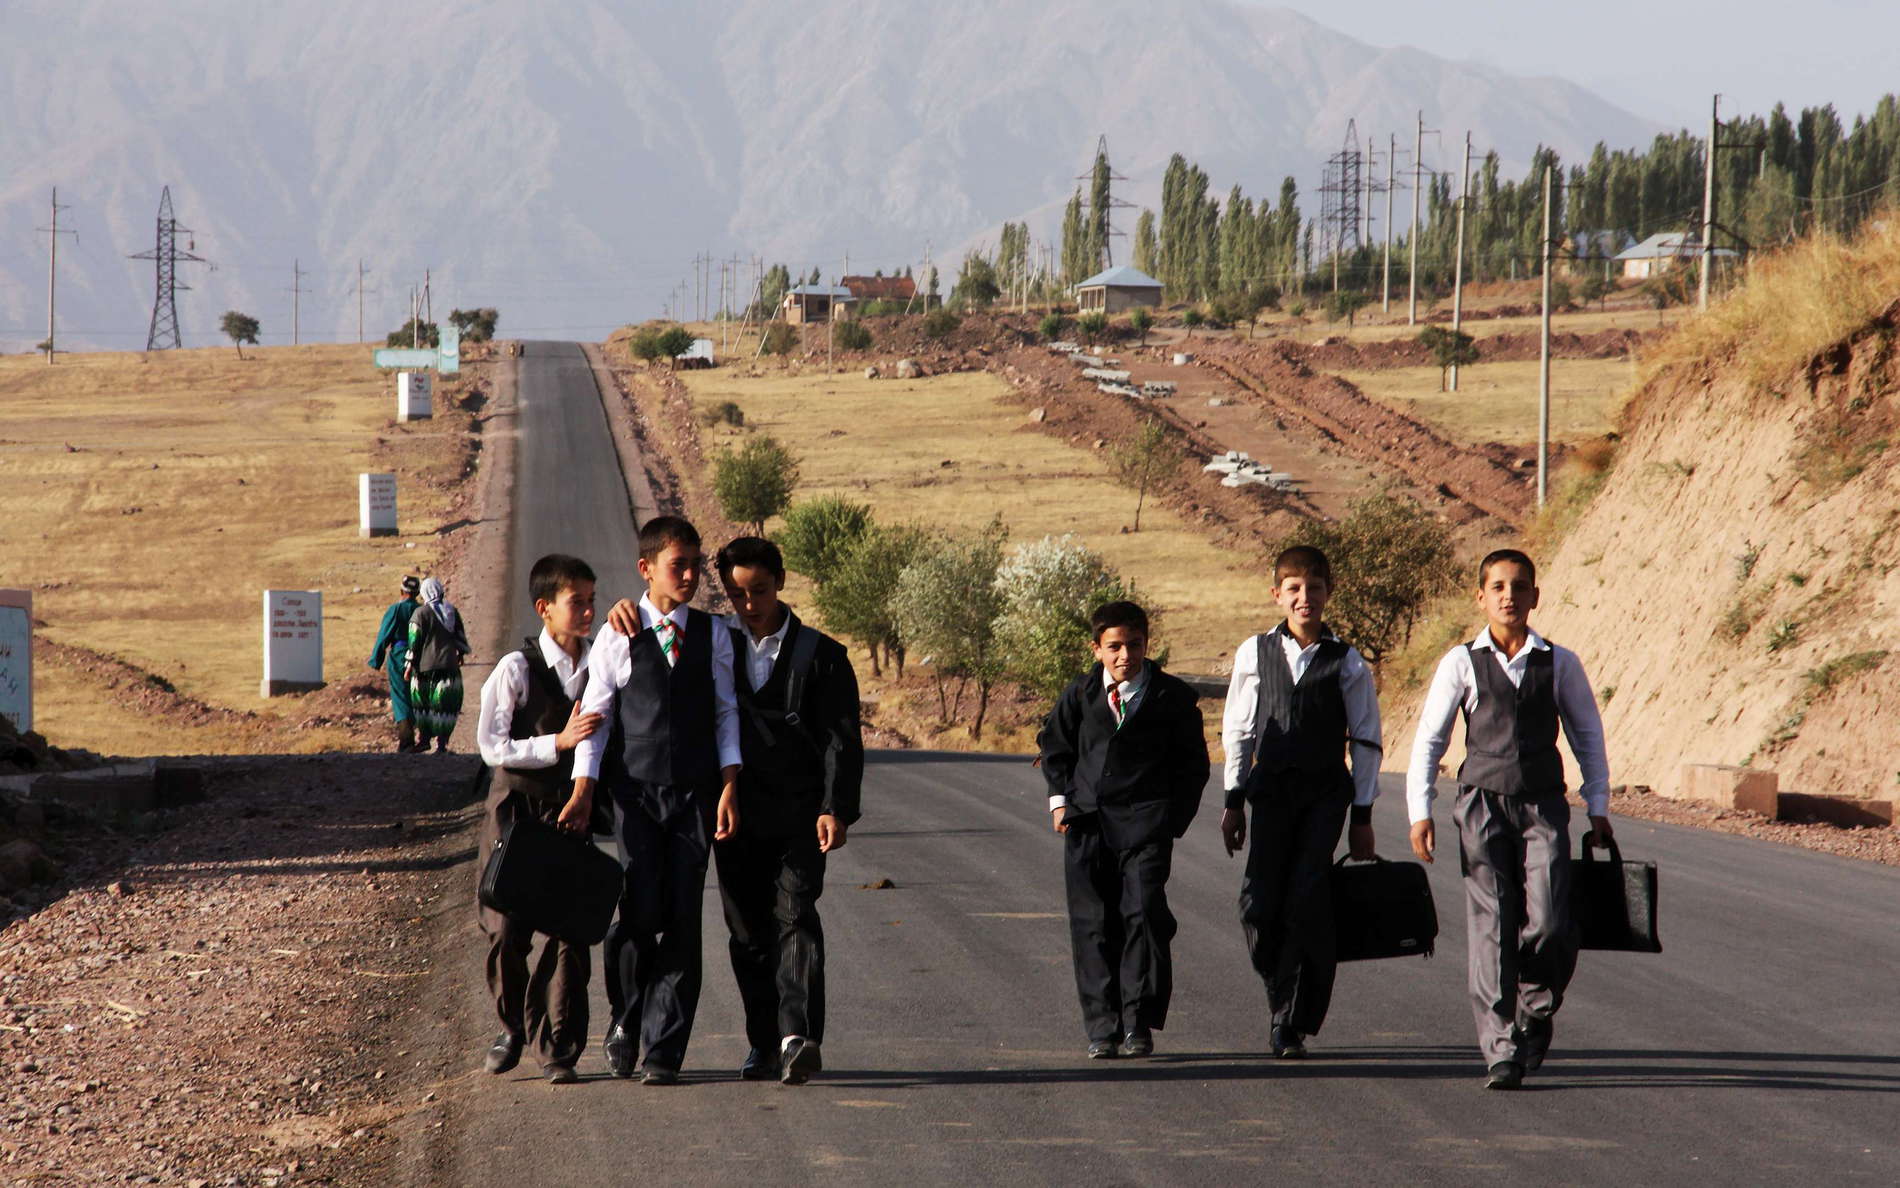 Surkhob Valley  |  School children